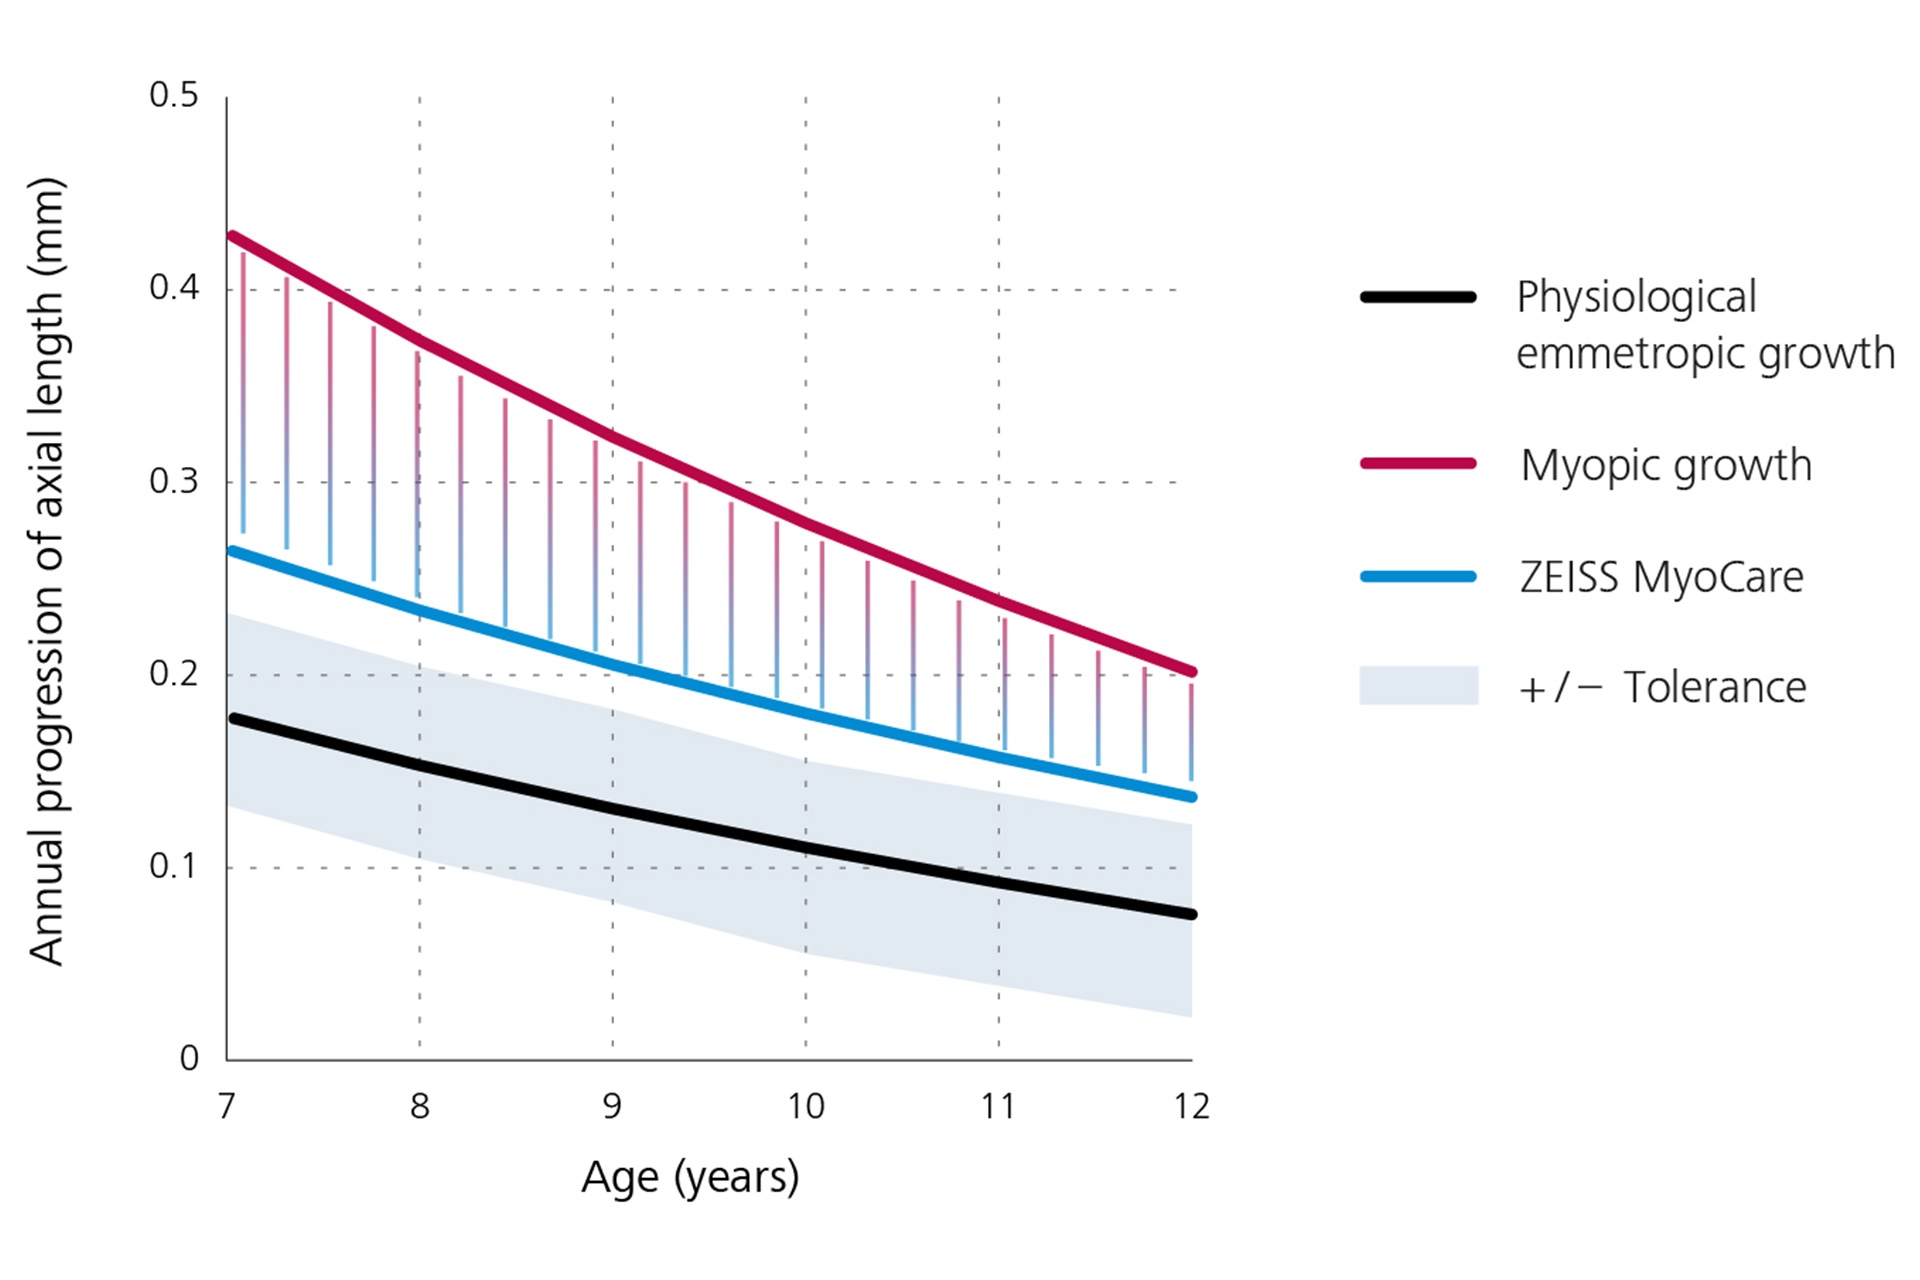 Een lijngrafiek die het jaarlijkse verloop van de axiale lengte weergeeft met onderaan in zwart de fysiologische emmetropische groei, bovenaan in rood de myopische groei en in het midden in blauw de resultaten voor ZEISS MyoCare brillenglazen. Uit deze grafiek is af te leiden dat de progressie van bijziendheid onder de myopische groeicurve ligt als ZEISS MyoCare brillenglazen worden gedragen.  